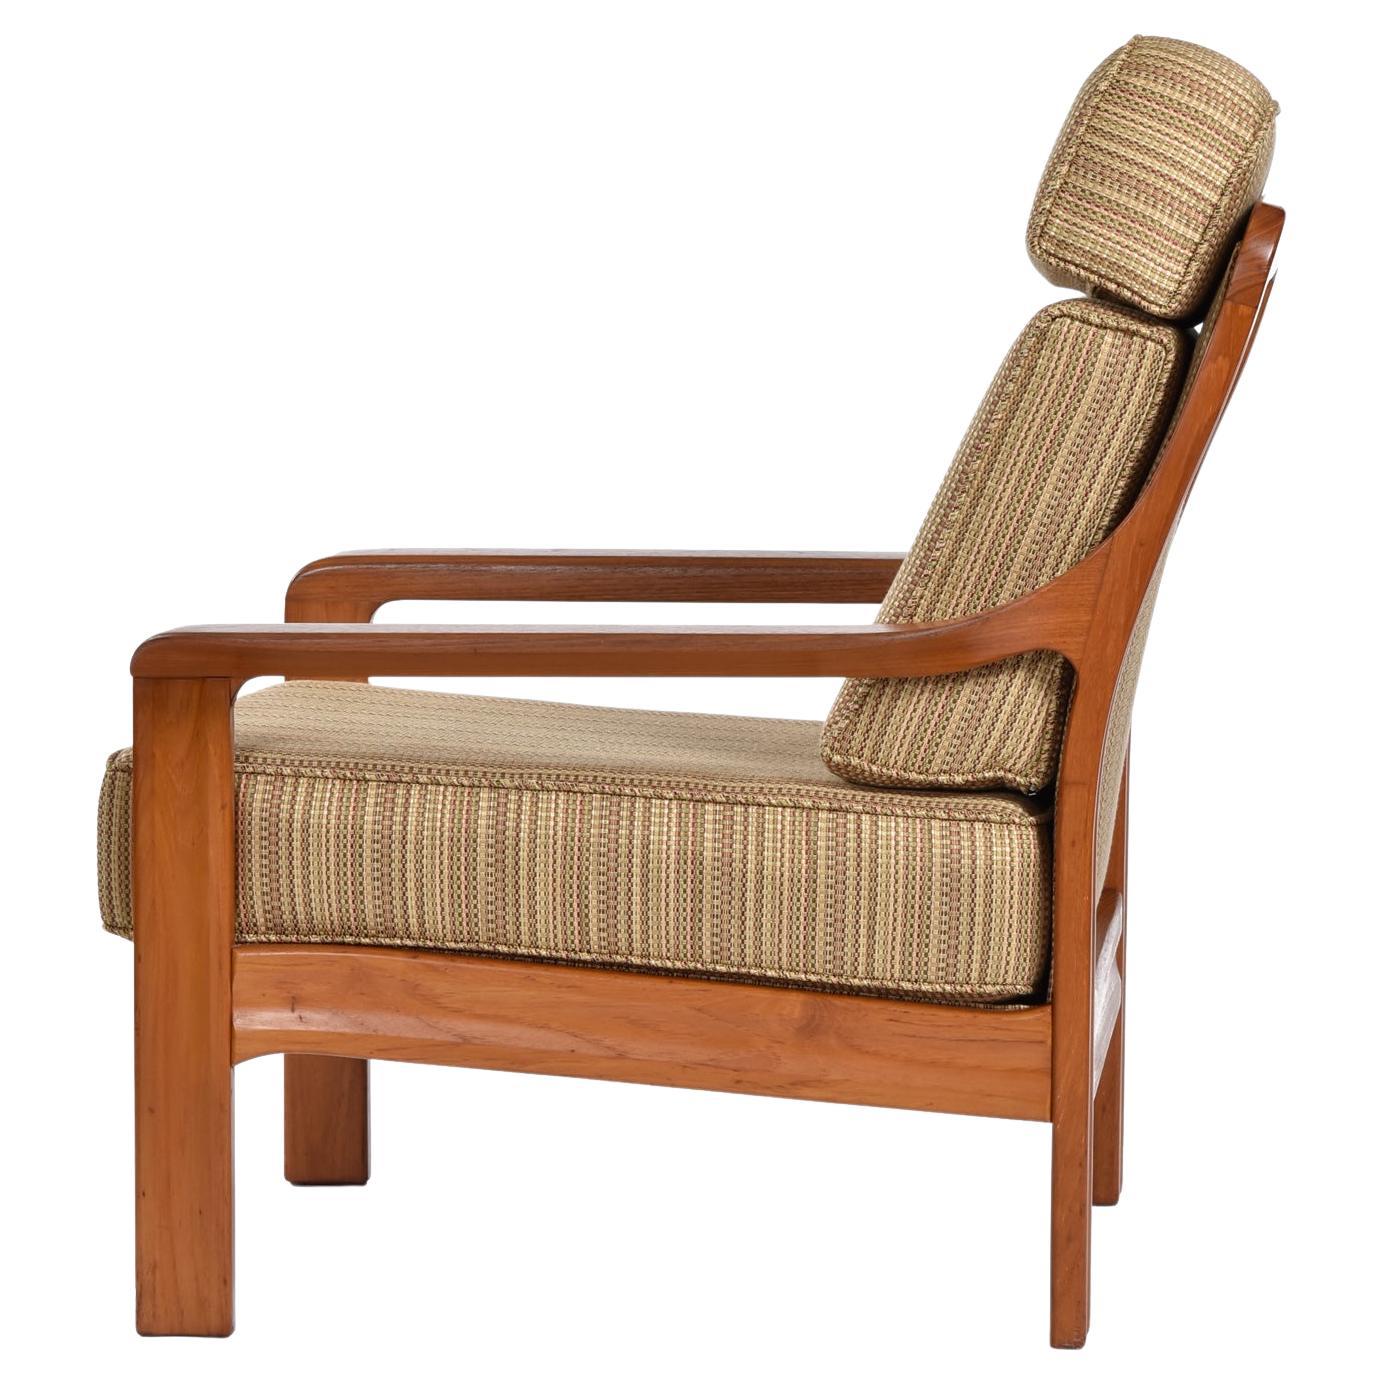 Bien qu'il ne soit pas marqué par le fabricant, cet exceptionnel fauteuil vintage en teck massif présente un design moderne danois distinctif, mais pourrait en fait être canadien.  La chaise présente un dossier rembourré encadré de teck sculpté. 